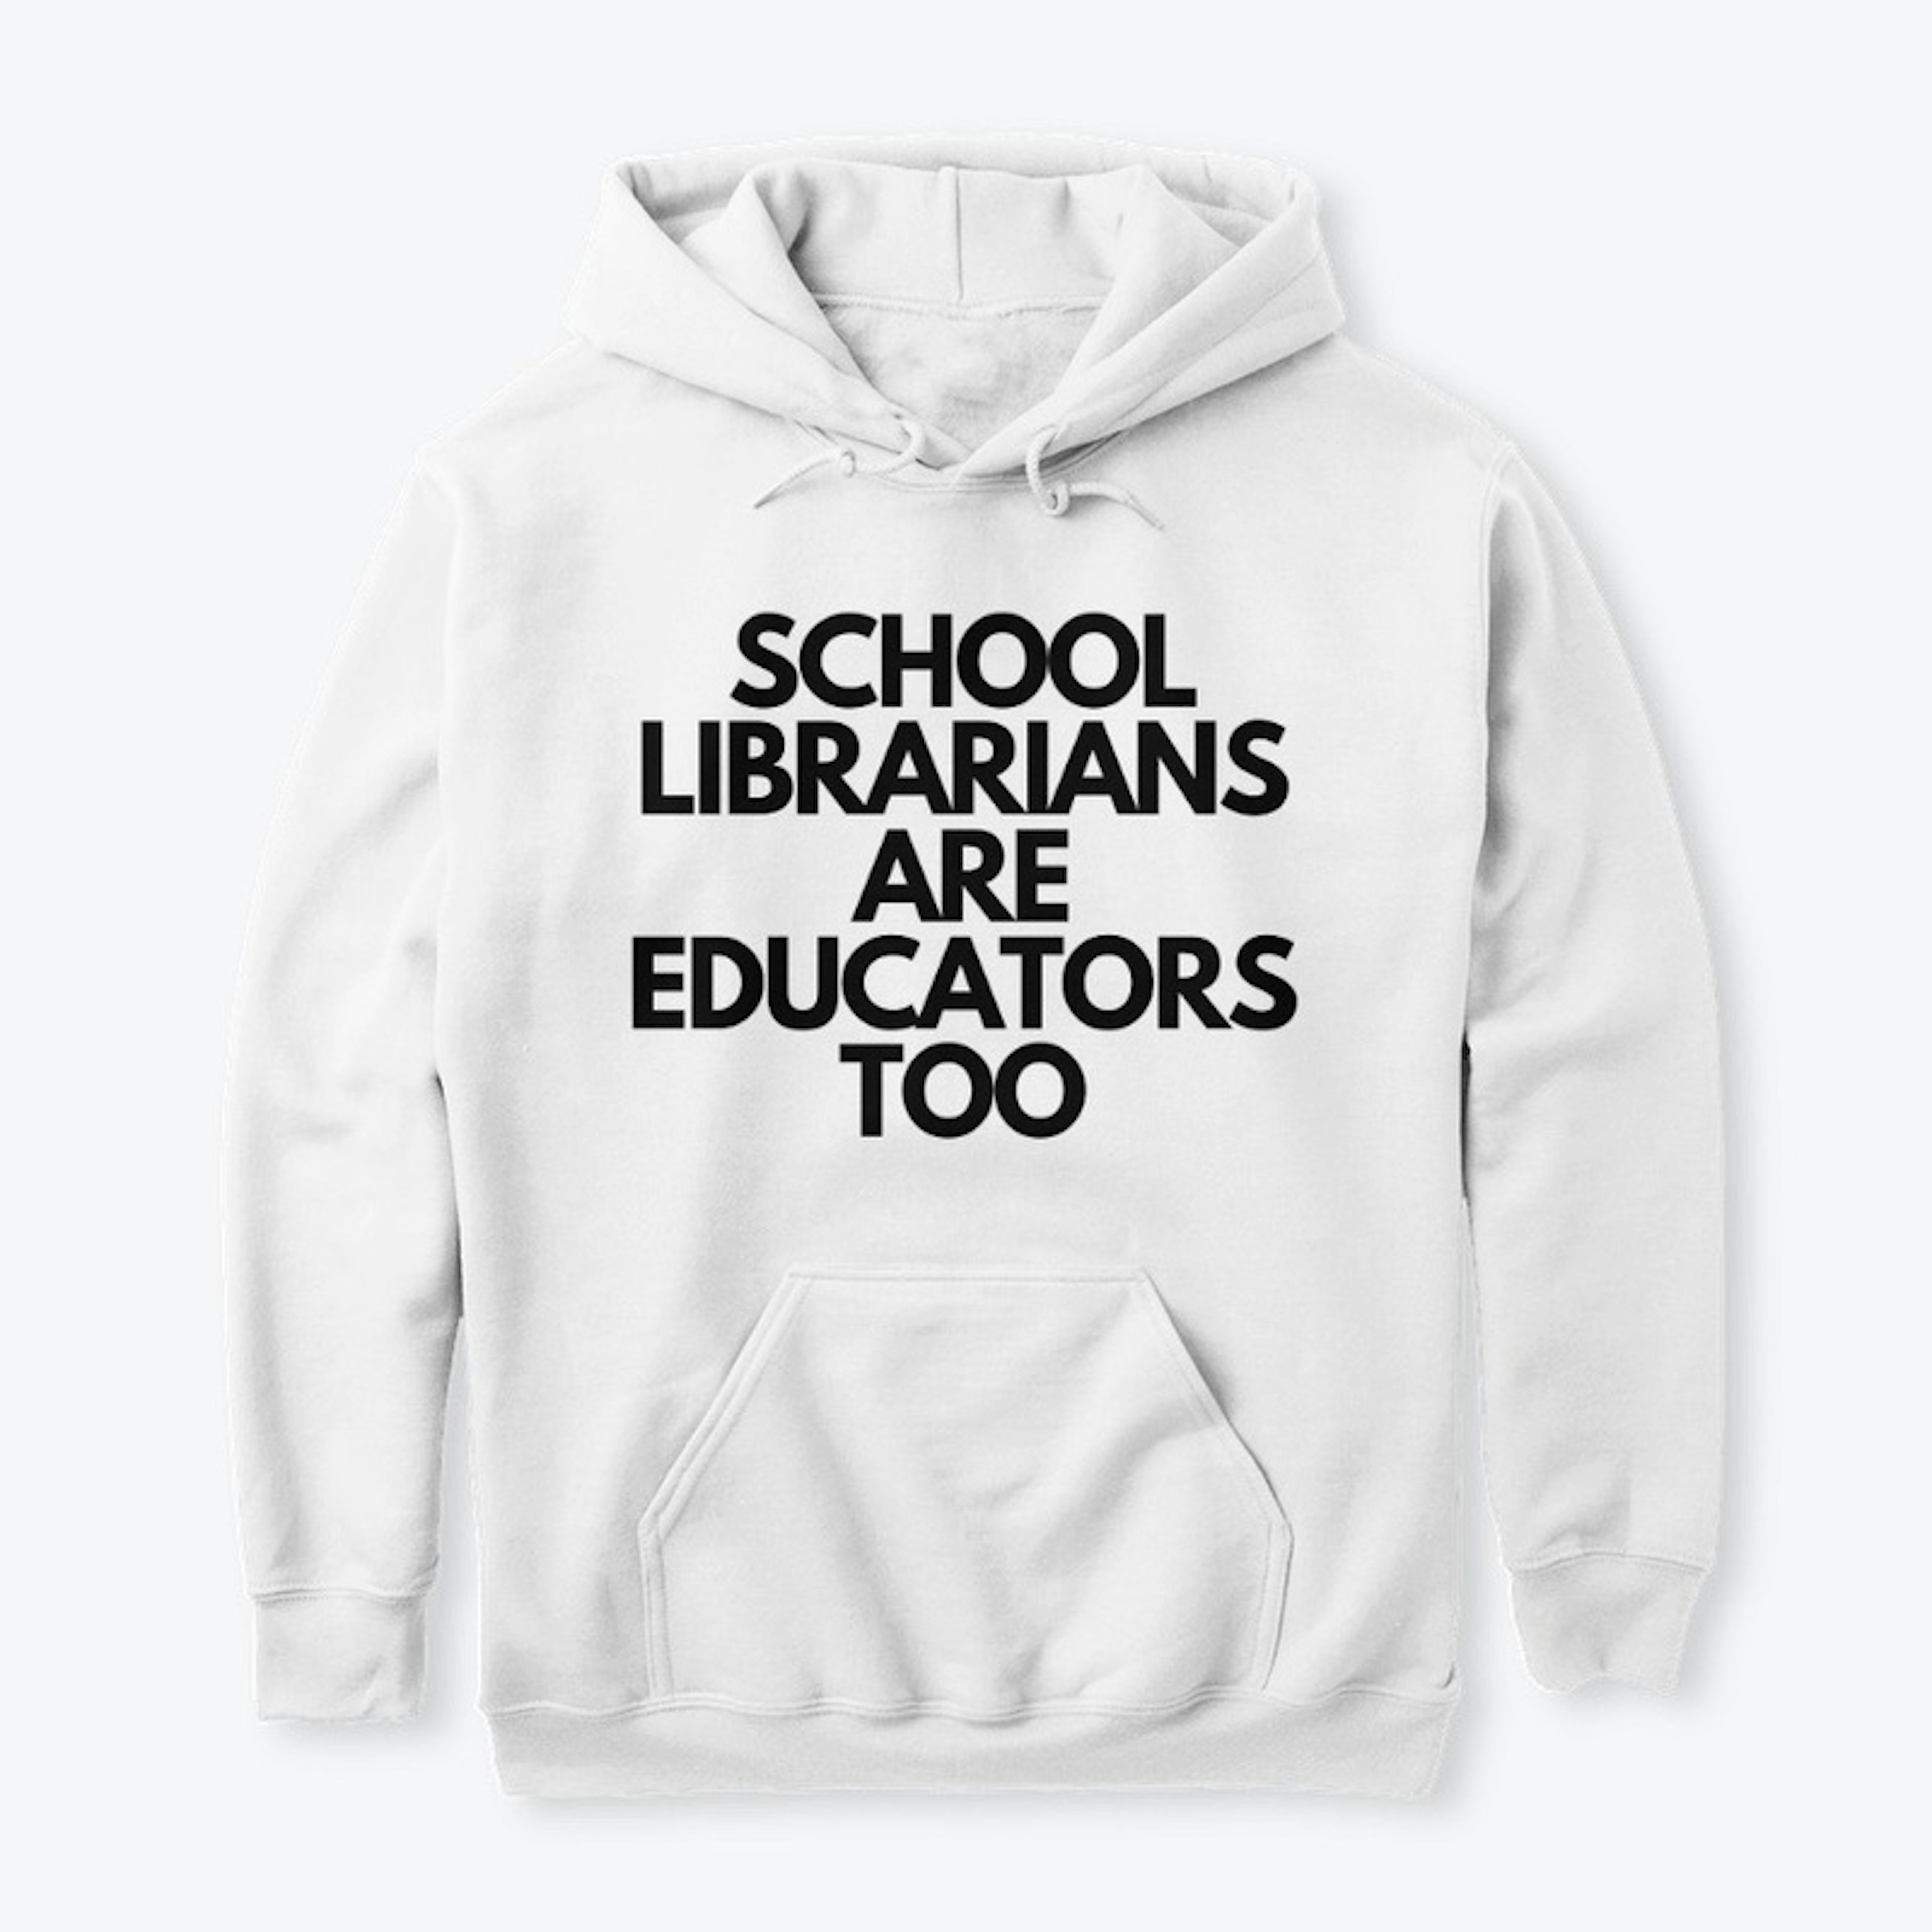 School Librarians Are Educators Too (I)